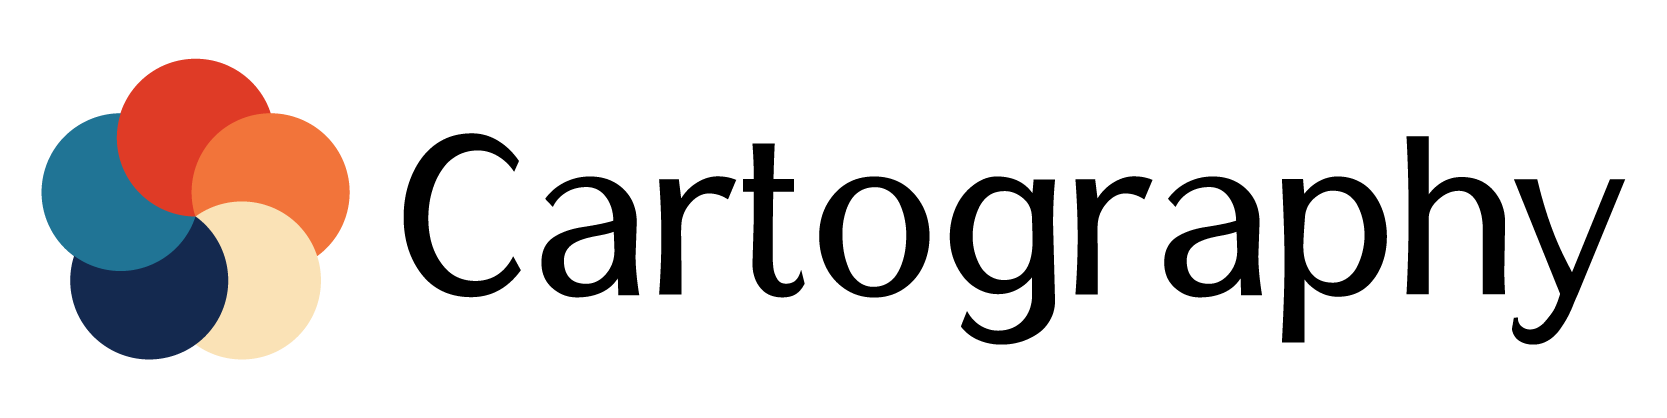 logo-horizontal.png